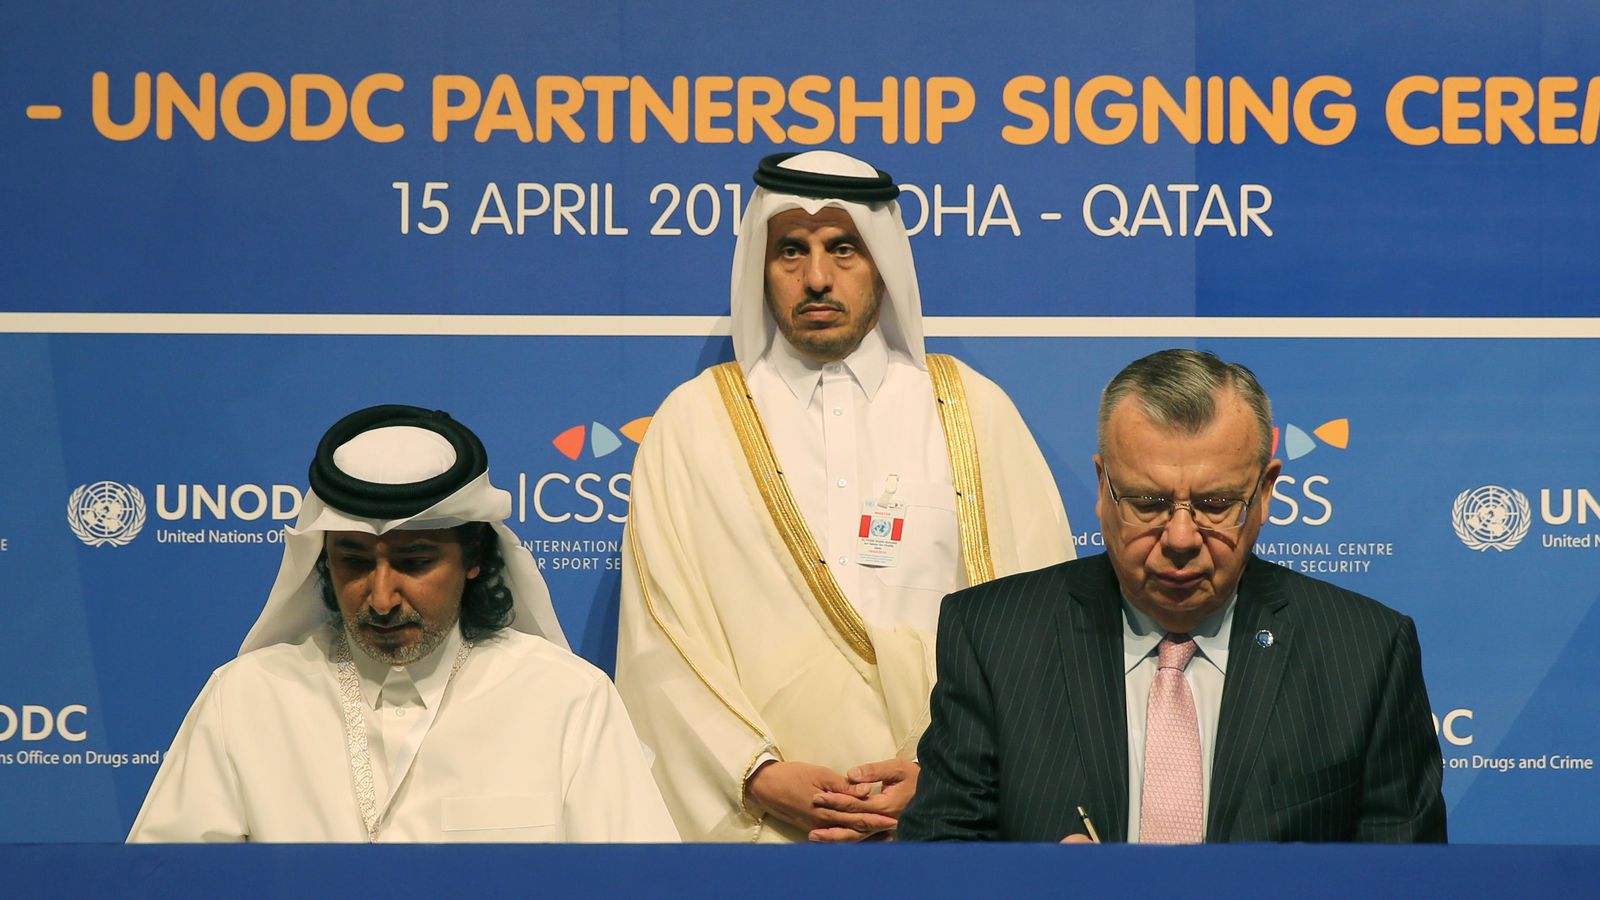 Foto: Mohammed Hanzab y Yury Fedotov firman el acuerdo de cooperación entre el ICSS y el UNODC en presencia del primer ministro de Qatar, Abdullah bin Nasser Al Thani (FOTOS: ICSS)